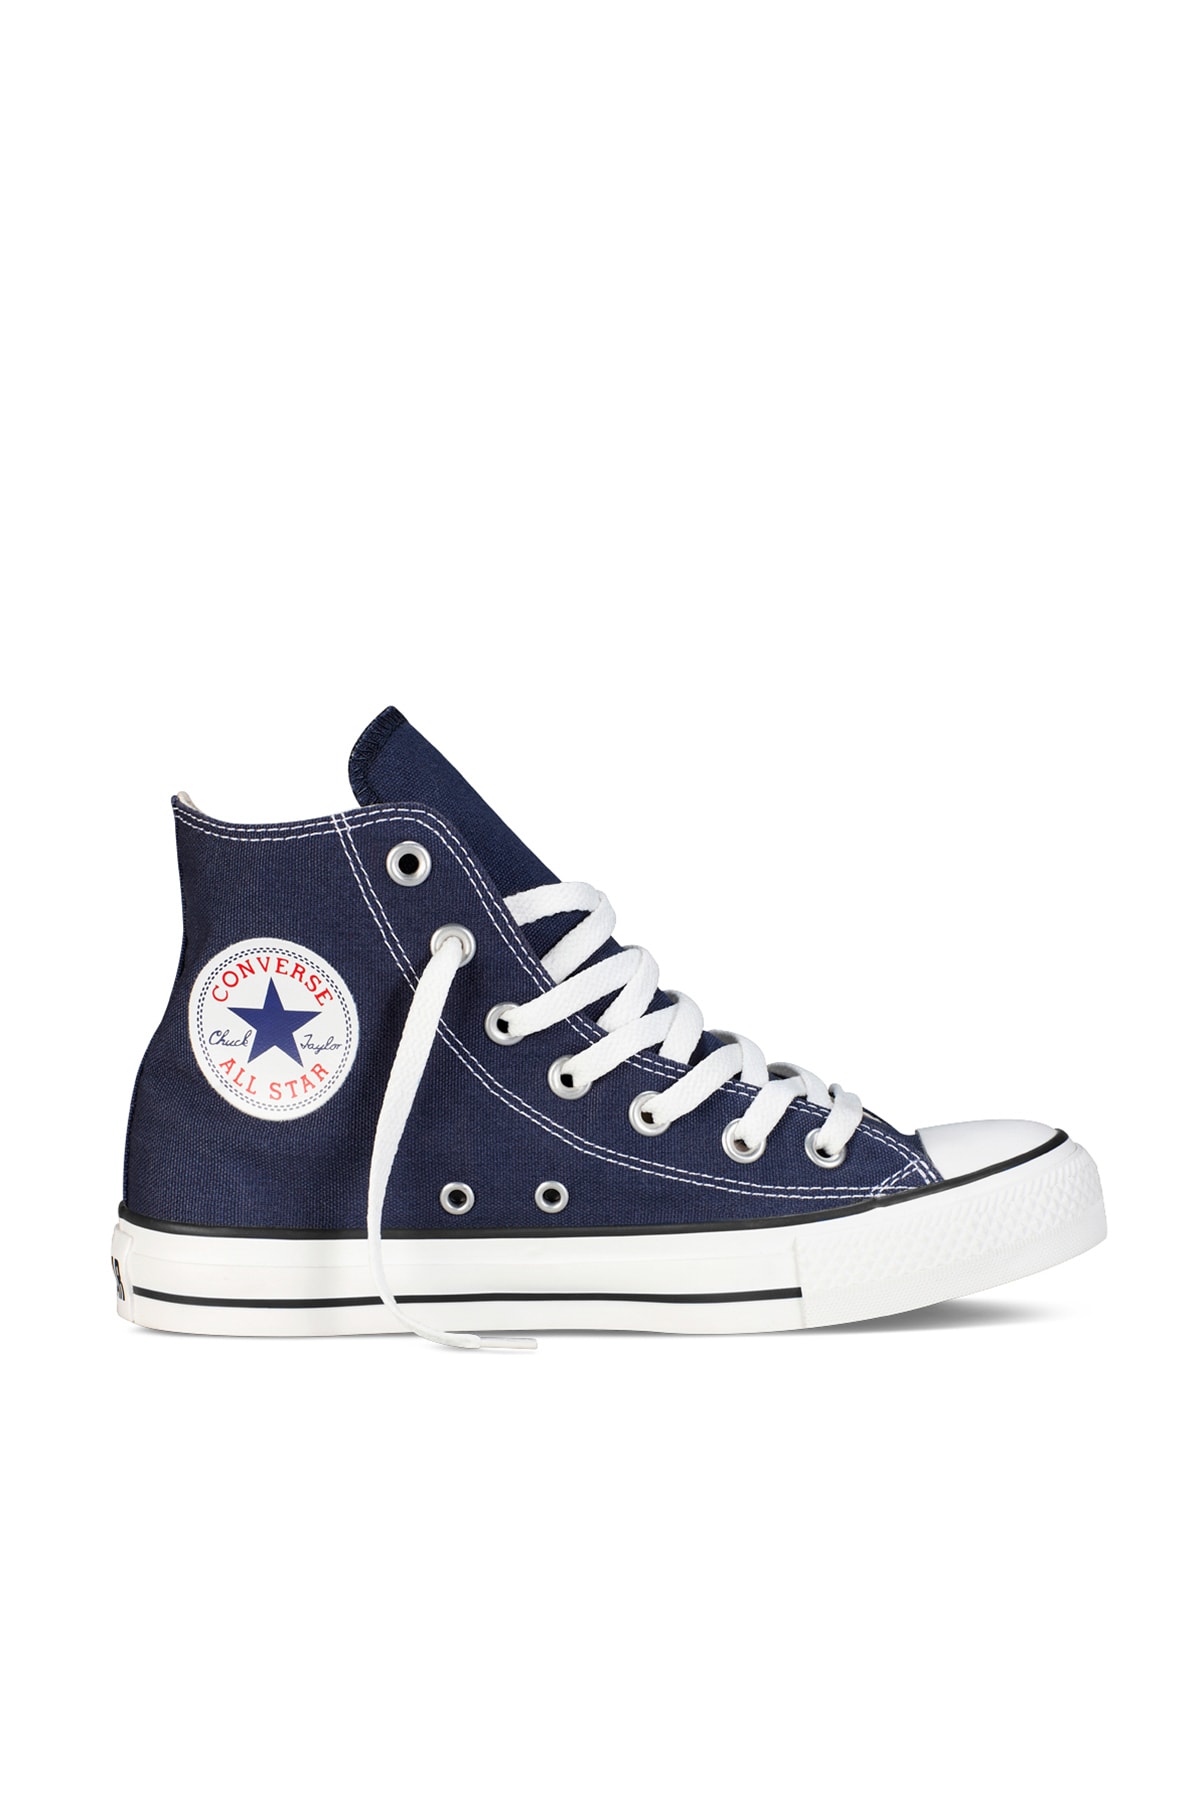 Converse Sneakers - Navy blue - Flat - Trendyol